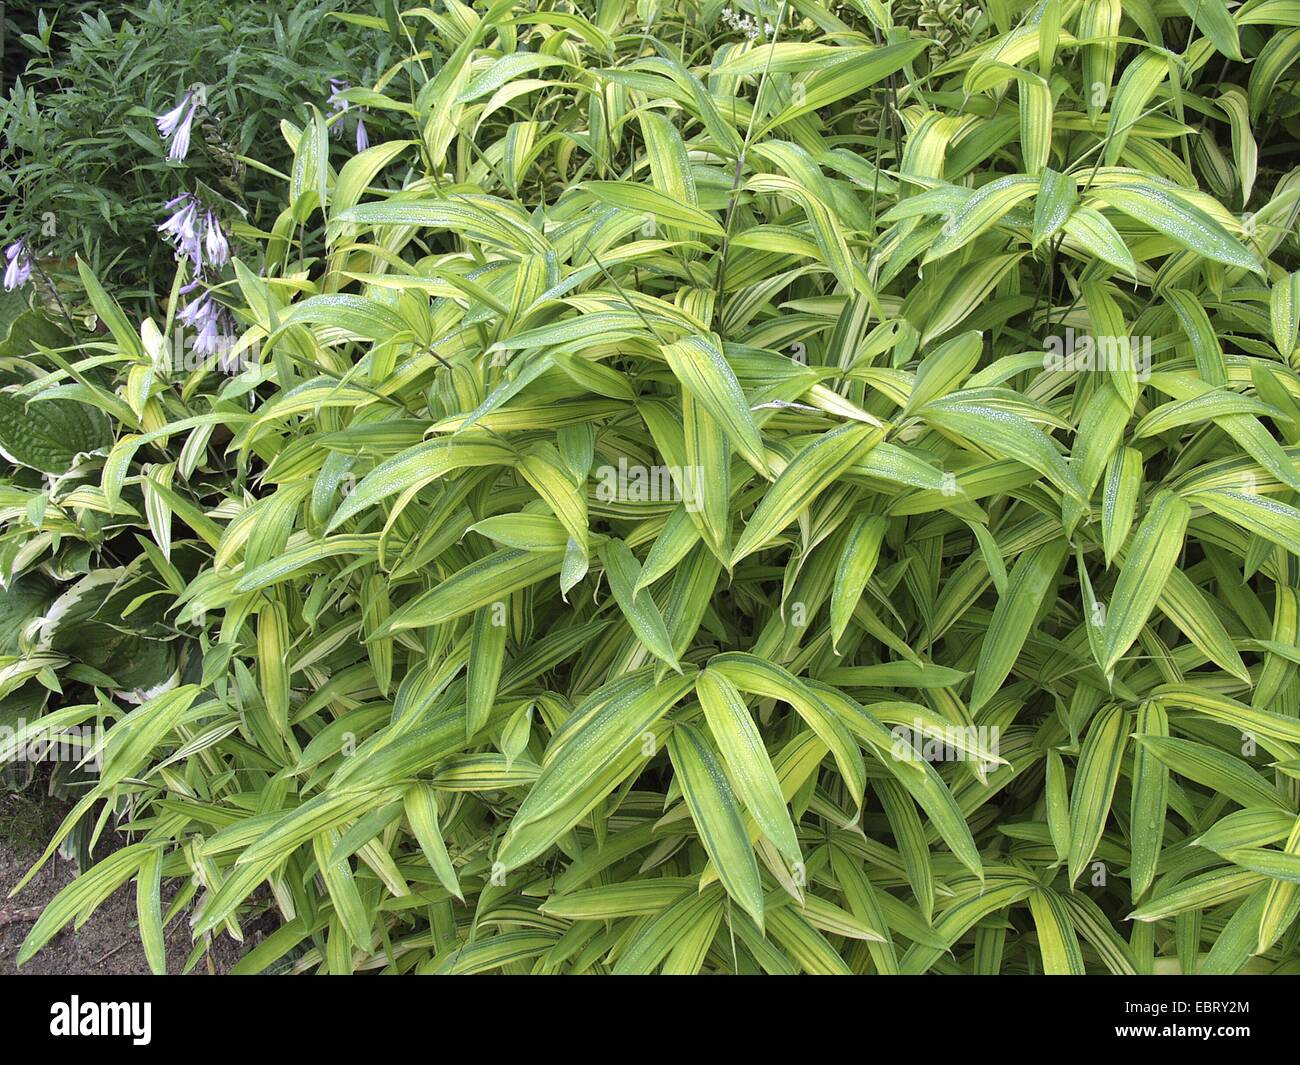 Pleioblastus viridistriatus (Pleioblastus viridistriatus), foliage Stock Photo